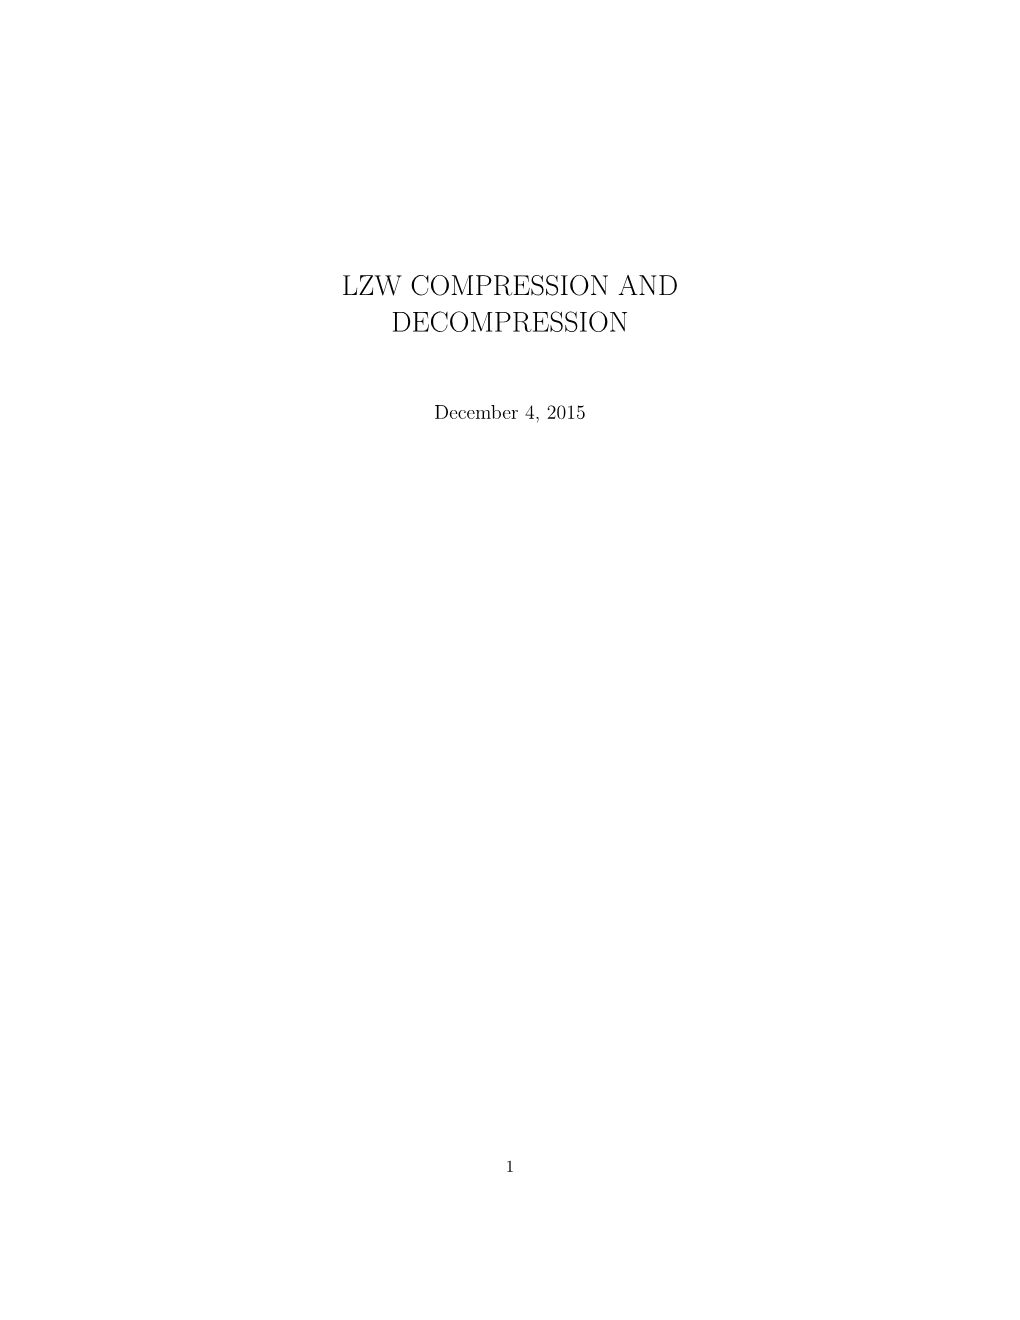 Lzw Compression and Decompression